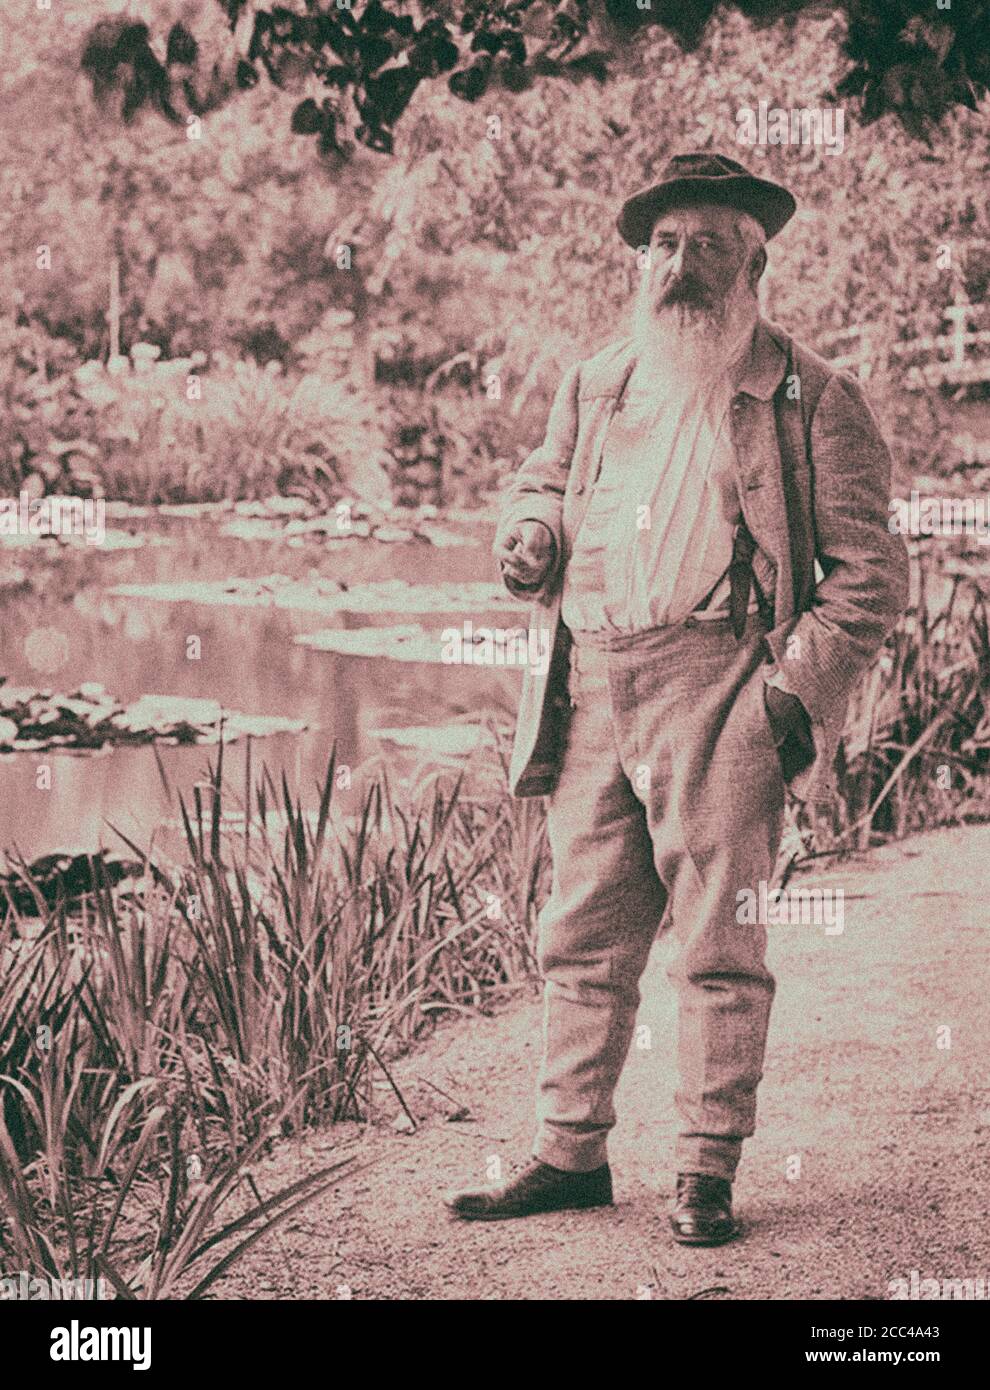 Oscar-Claude Monet (14. November 1840 – 5. Dezember 1926) war ein französischer Maler, ein Gründer der französischen Impressionismus Malerei und die meisten konsequent und p Stockfoto